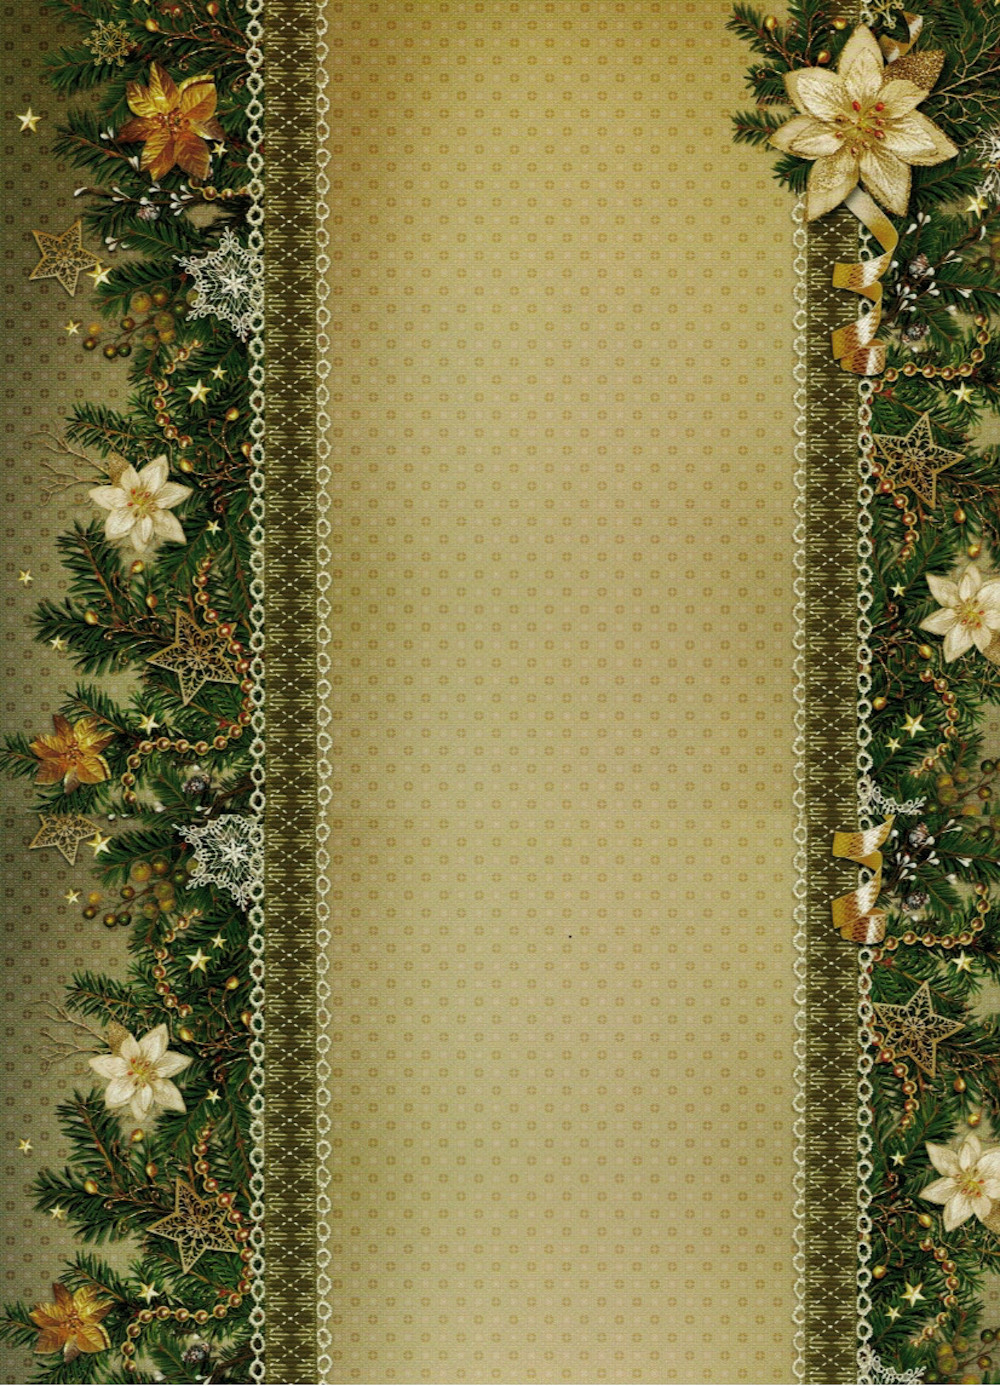 Motivpapier Bordüre Weihnachten grün 24x34cm